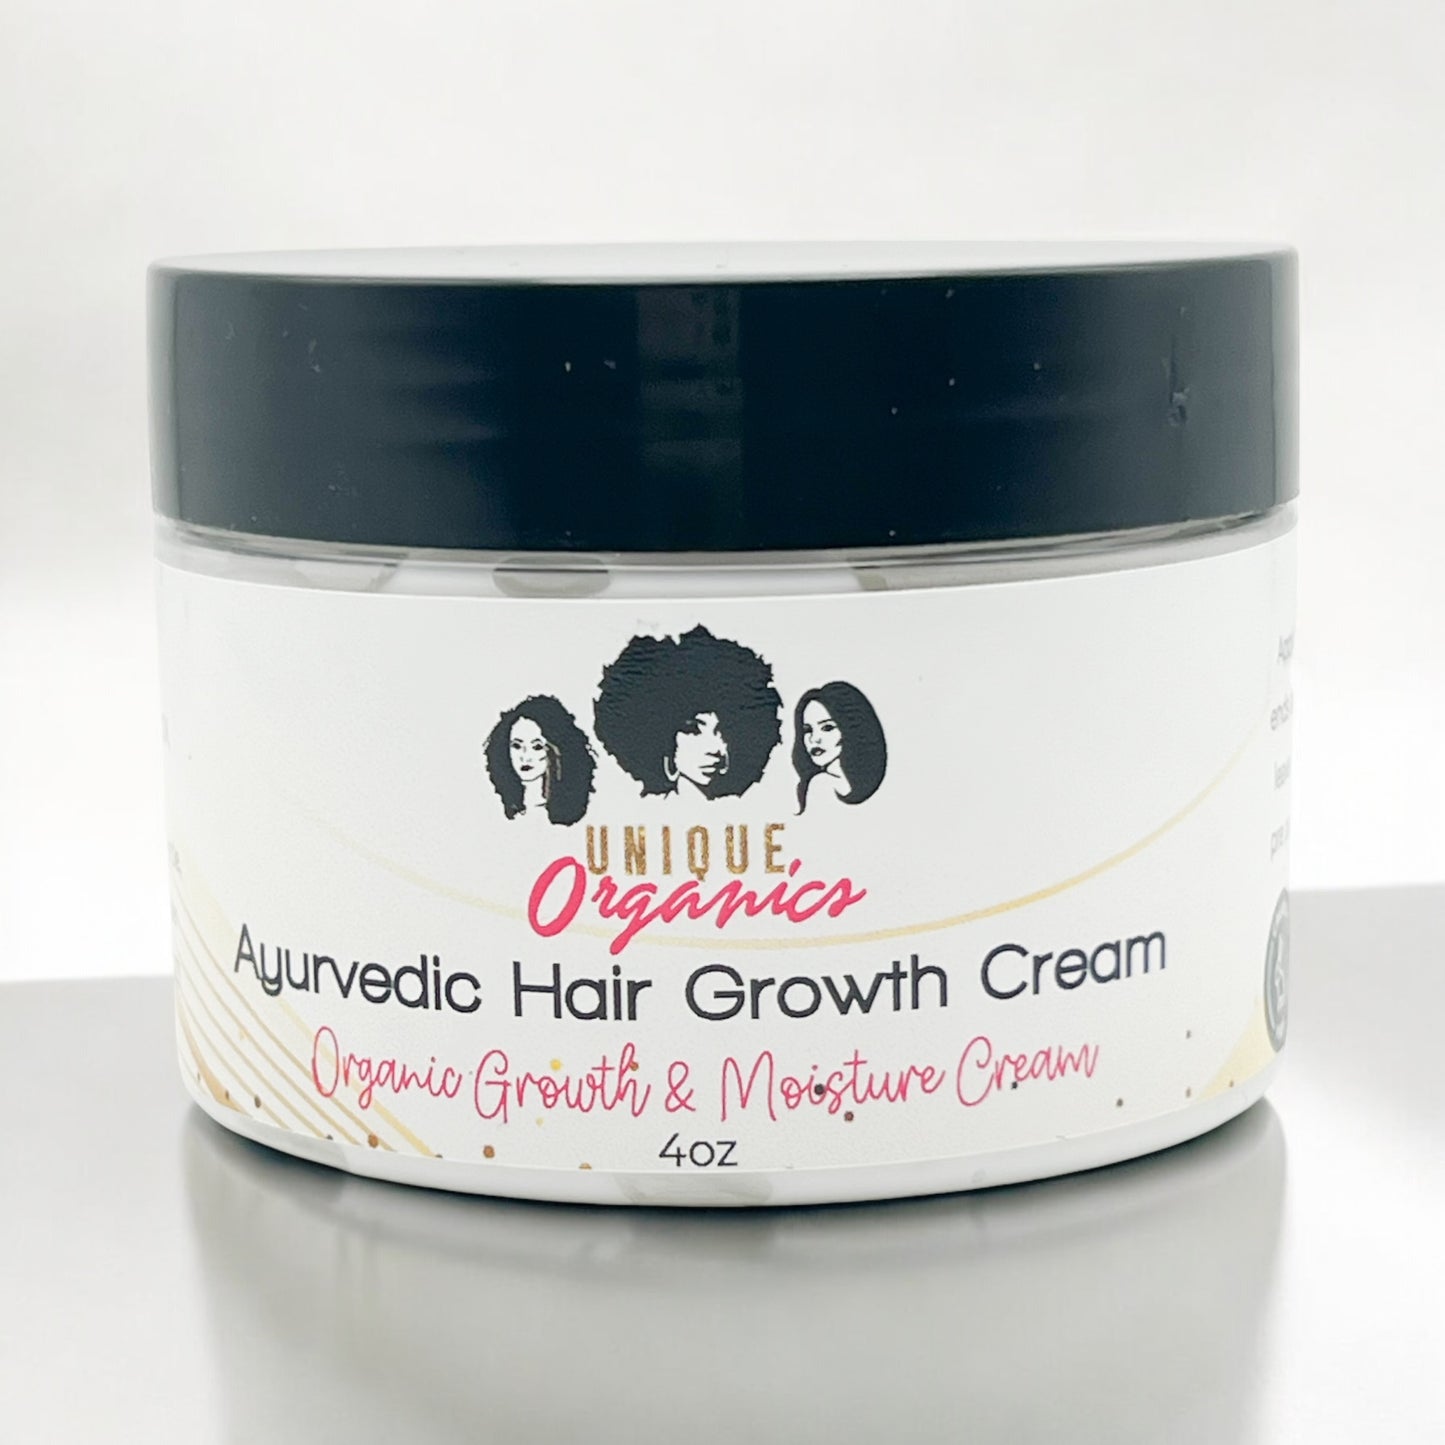 Moisturizing Hair Cream for Growth and Dry Hair